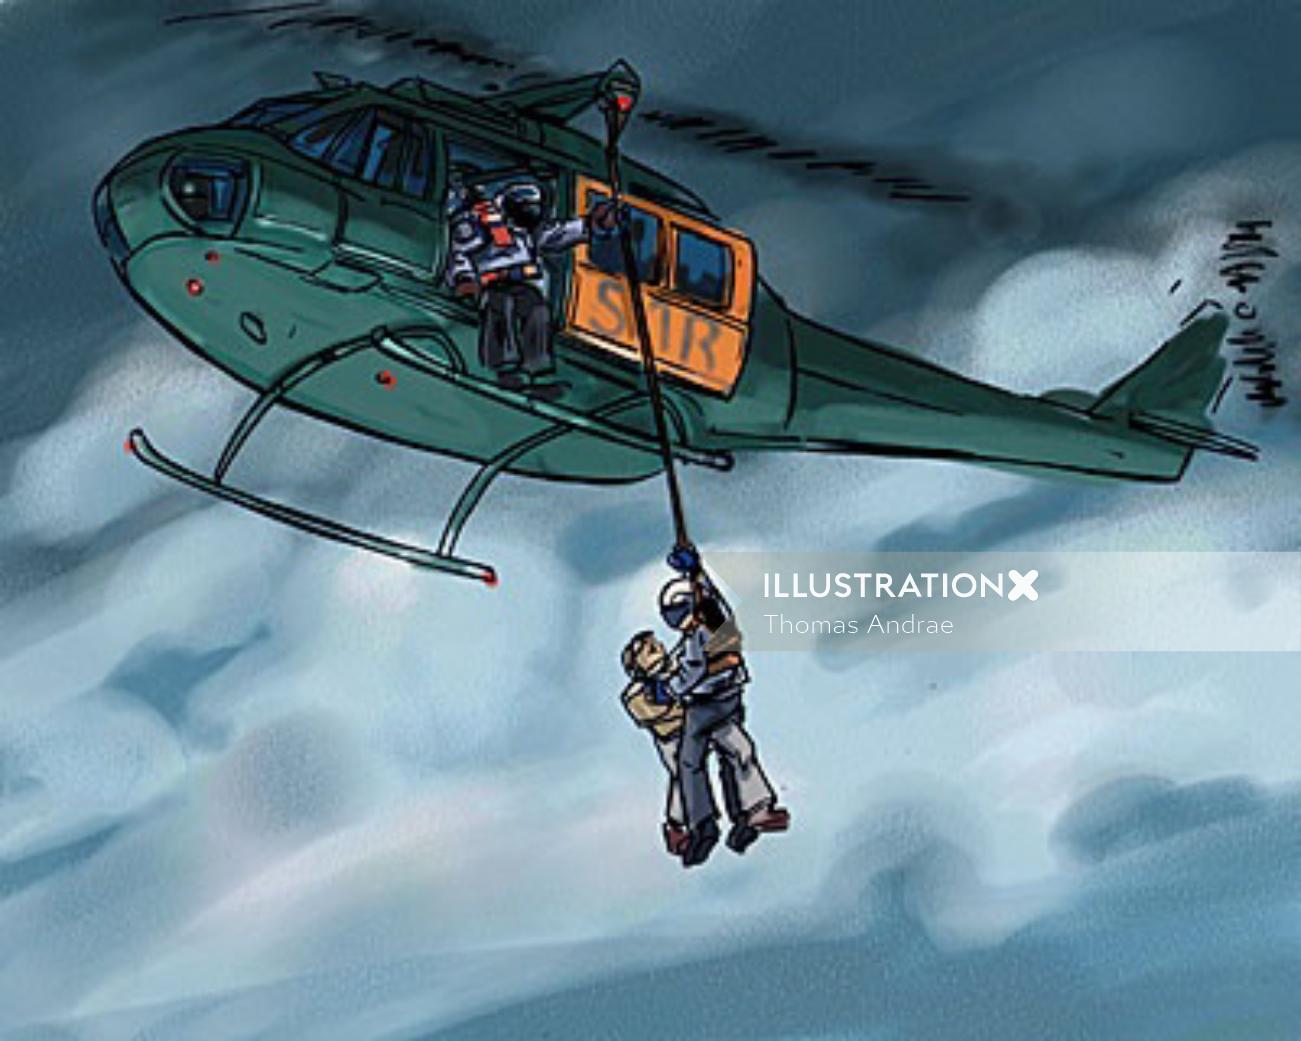 空を飛んでいるヘリコプター、ロープの助けを借りてヘリコプターから降りる男